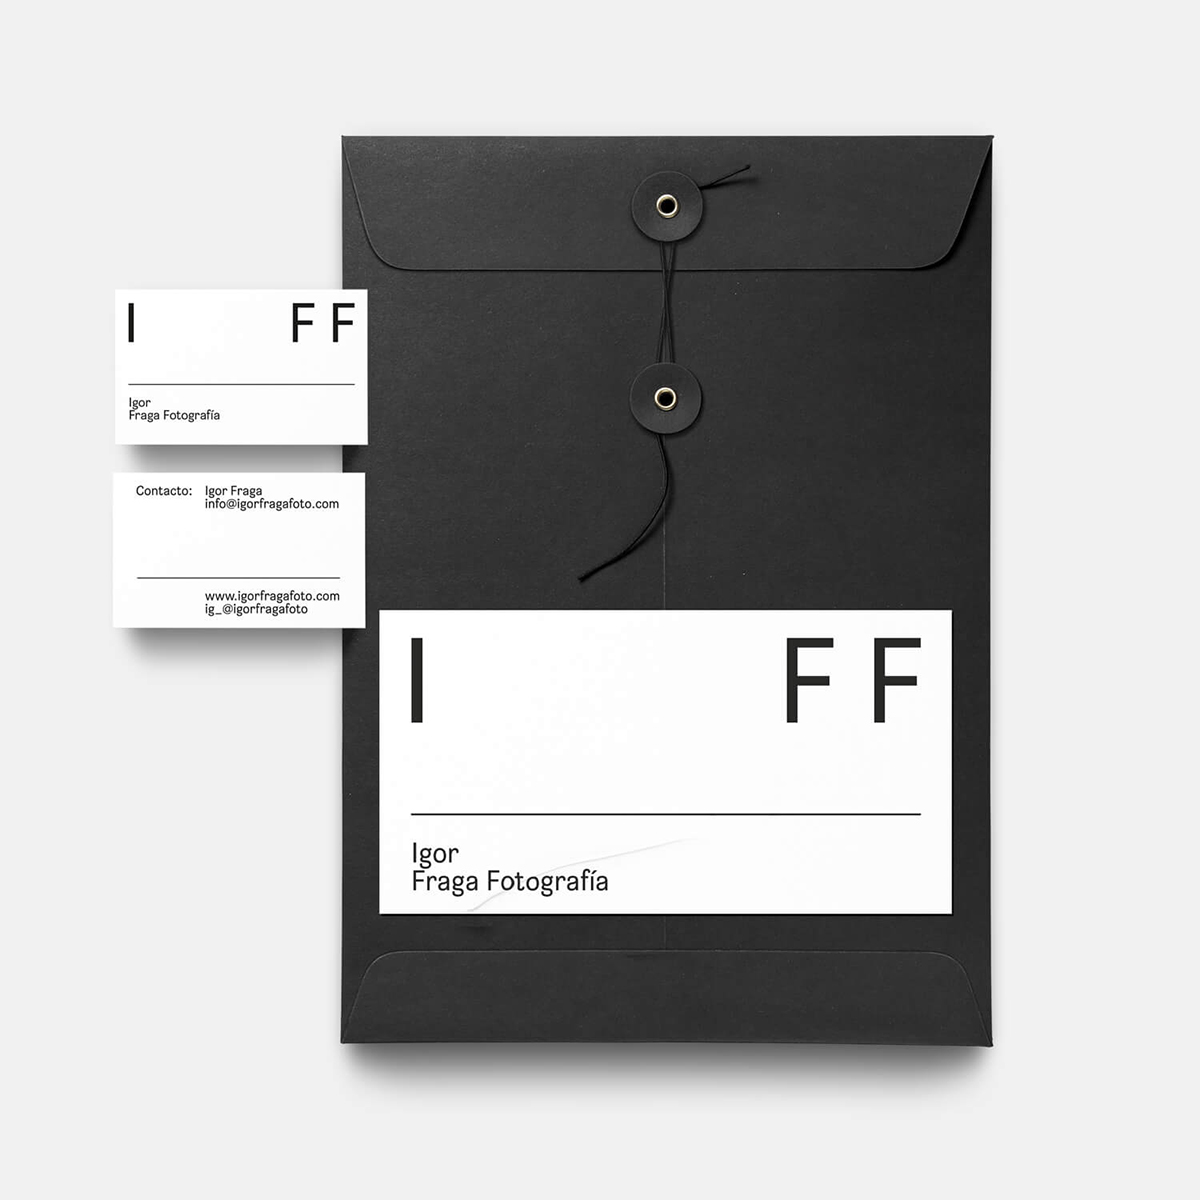 Diseño y desarrollo de identidad visual corporativa para Igor Fraga Fotografía. Stationery.